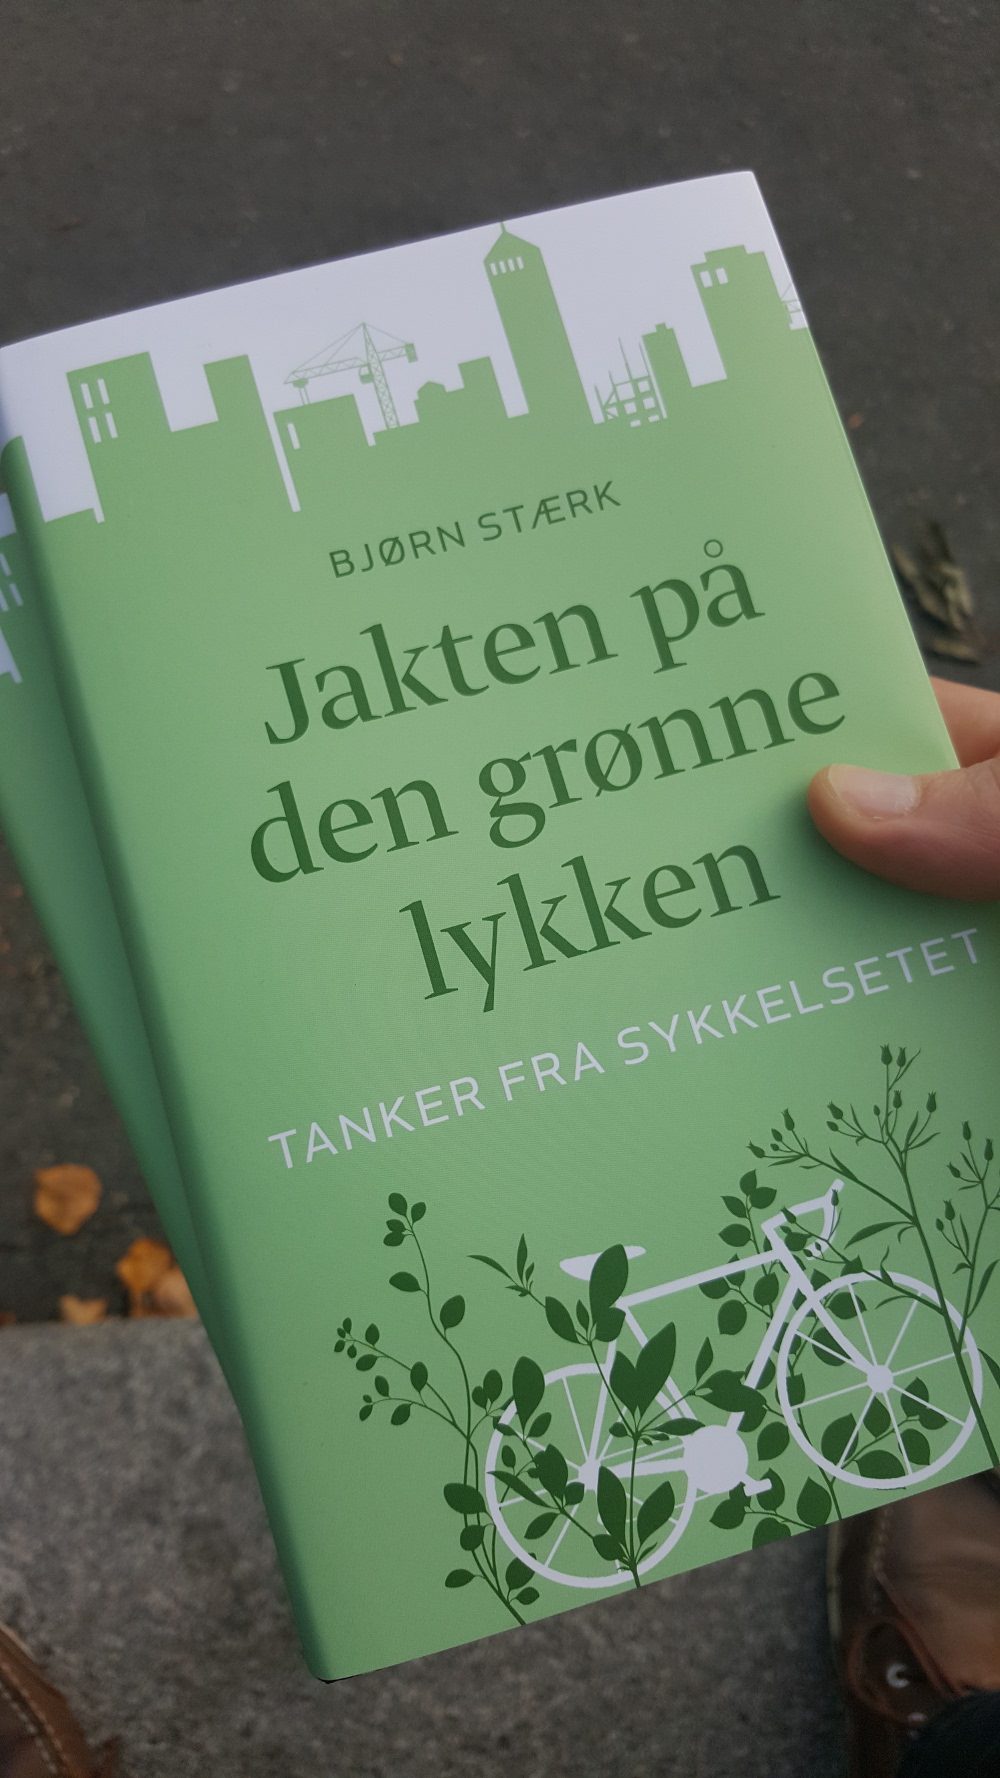 Bjørn Stærk: Jakten på den grønne lykken - tanker fra sykkelsetet